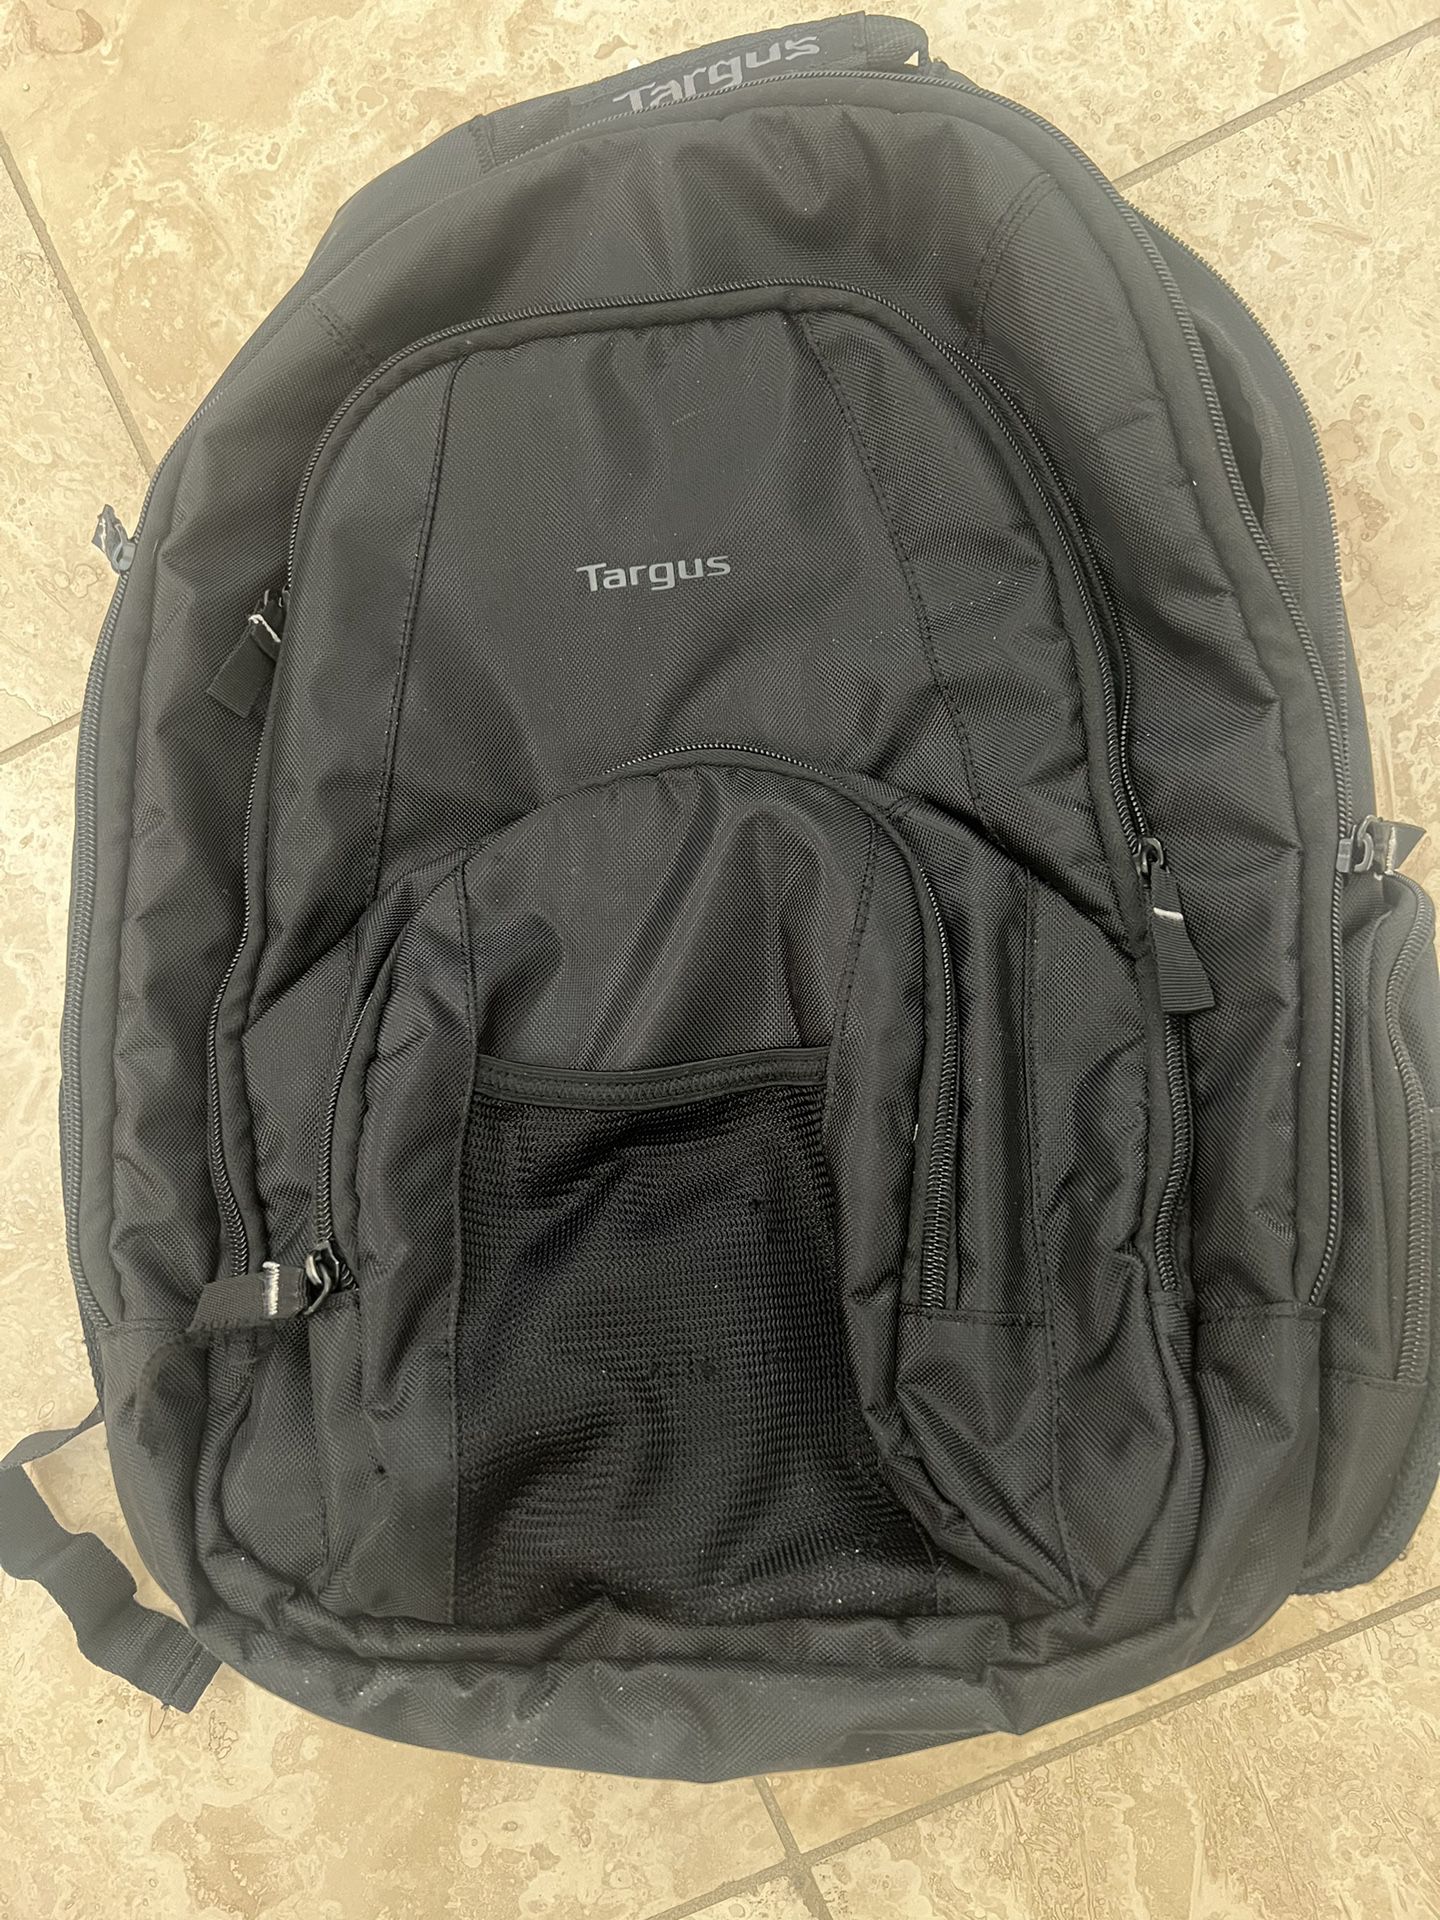 Targus Backpack Like New!